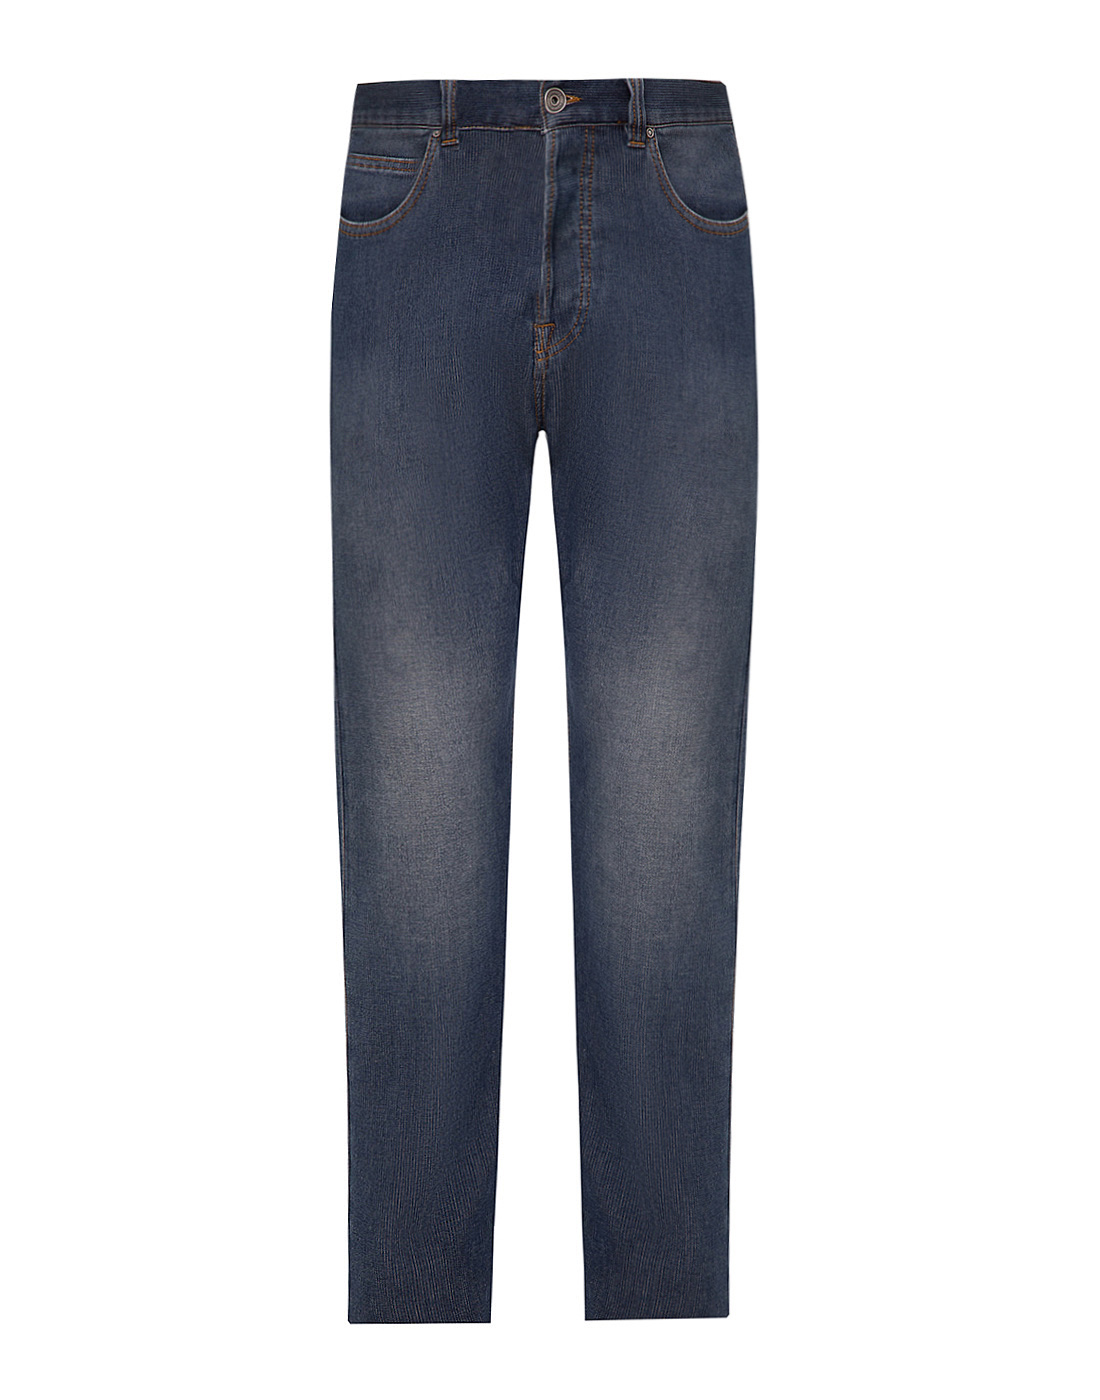 Мужские синие джинсы Eleventy SPA0260-1